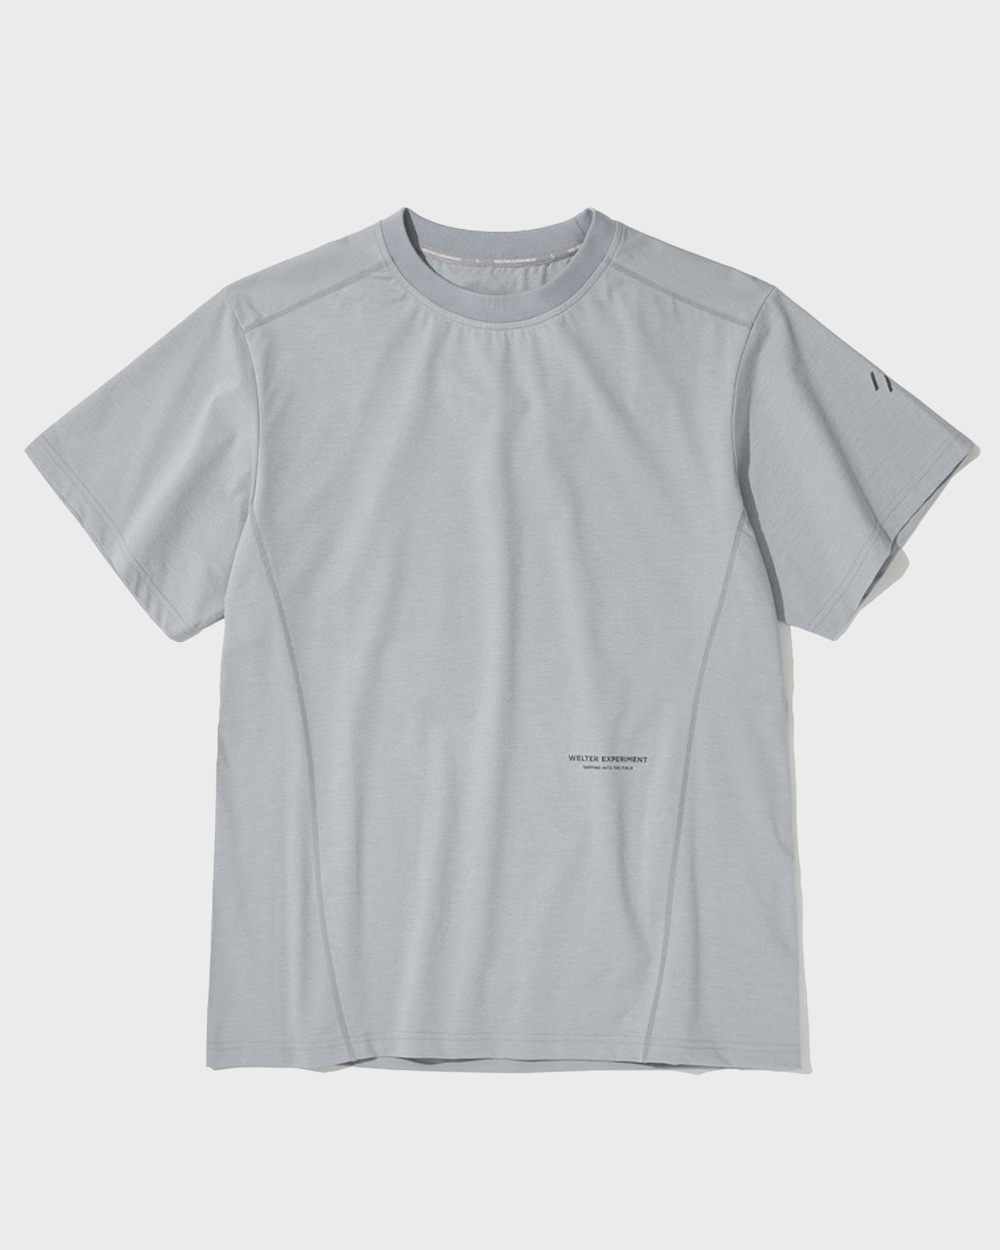 Erie T-Shirt (Light grey)